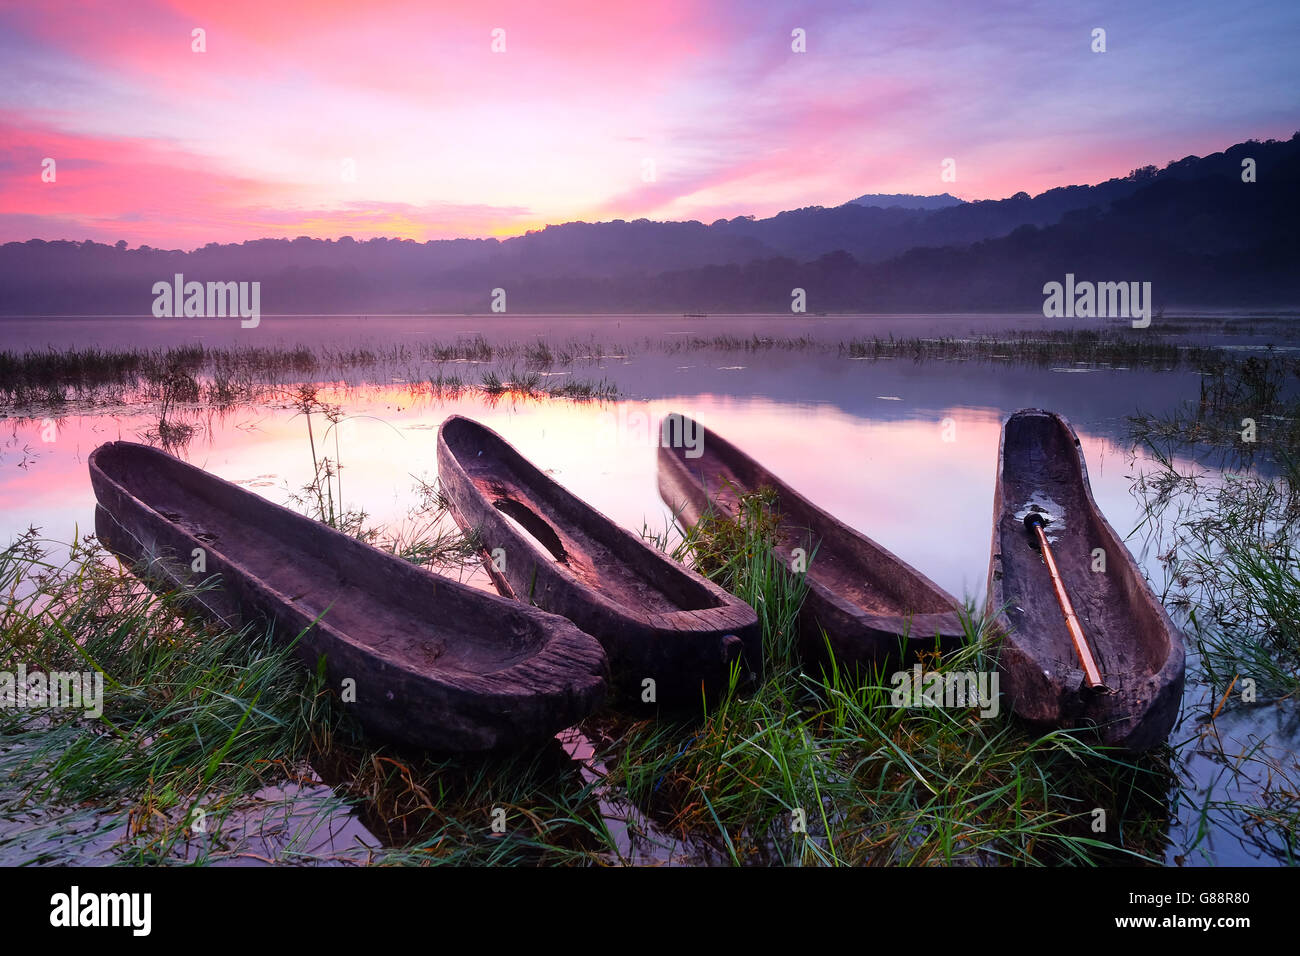 Four boats at sunset, Tamblingan Lake, Bali, Indonesia Stock Photo